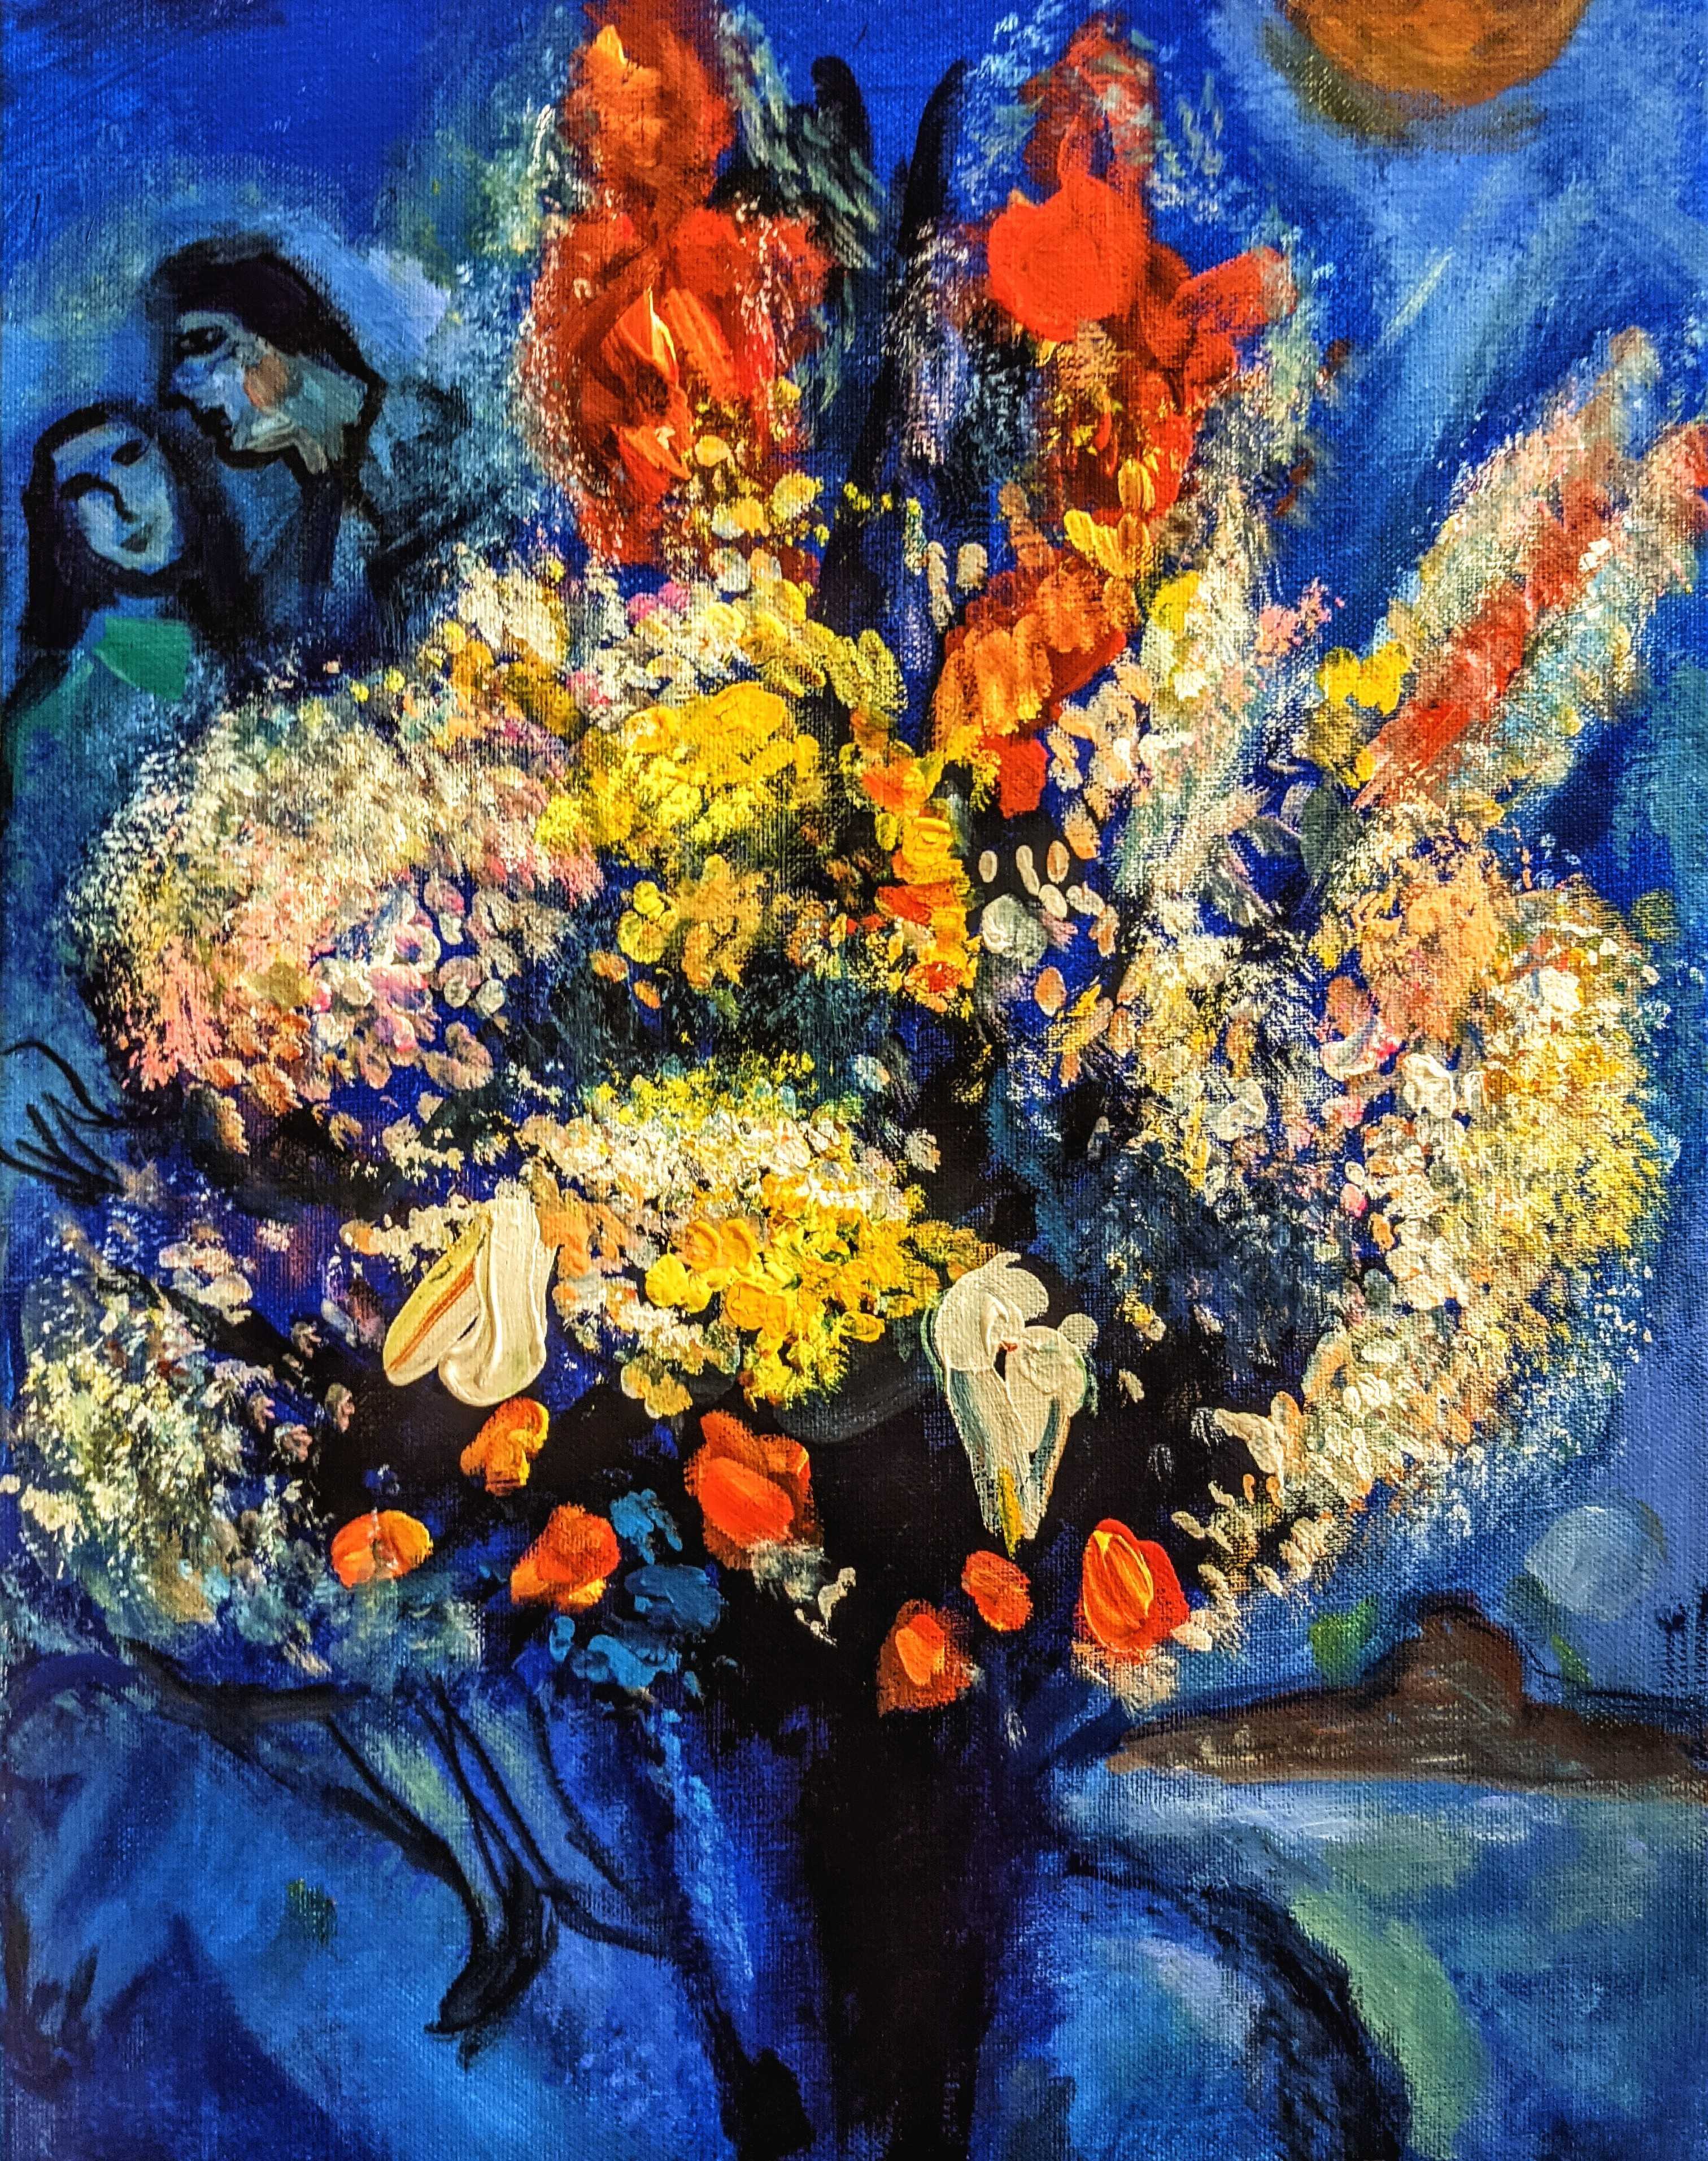 06月22日 (土) 13:00-16:00 | 上野/根津 | マルク・シャガール | 天に捧げる花束 (Bouquet Offered to the Sky by Marc Chagall at Ueno/Nezu)